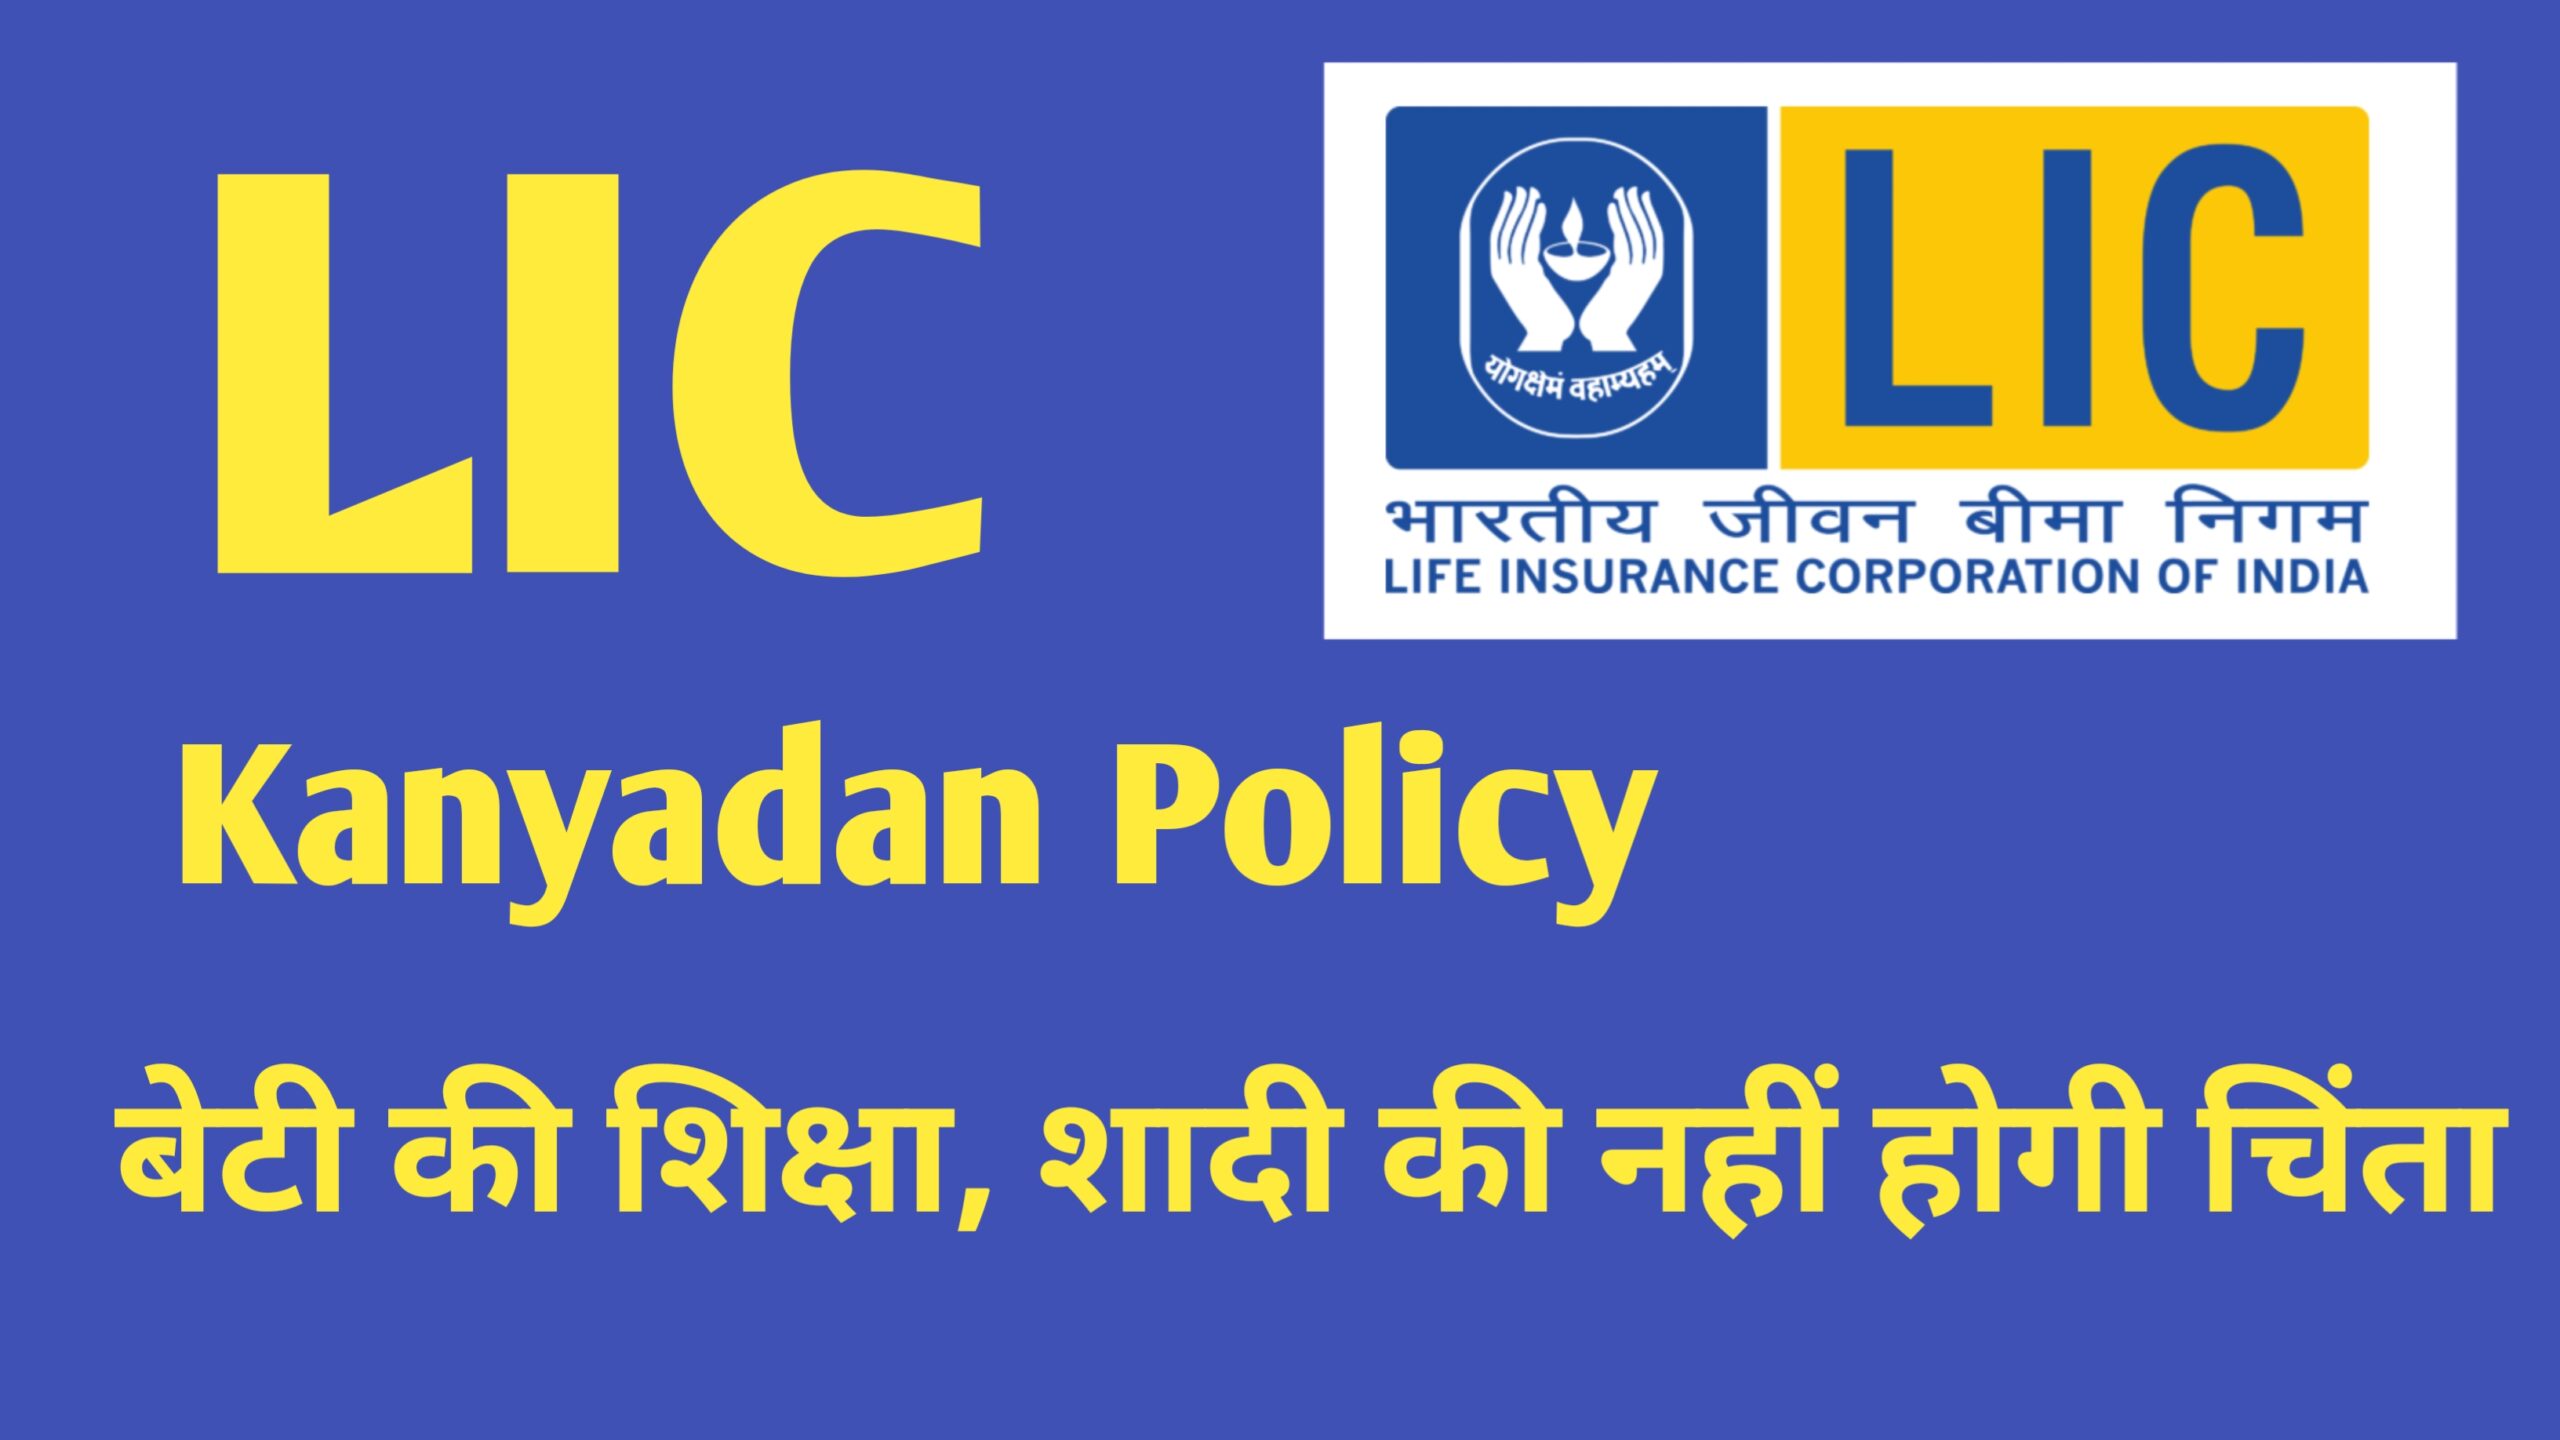 LIC Kanyadan Policy 2024